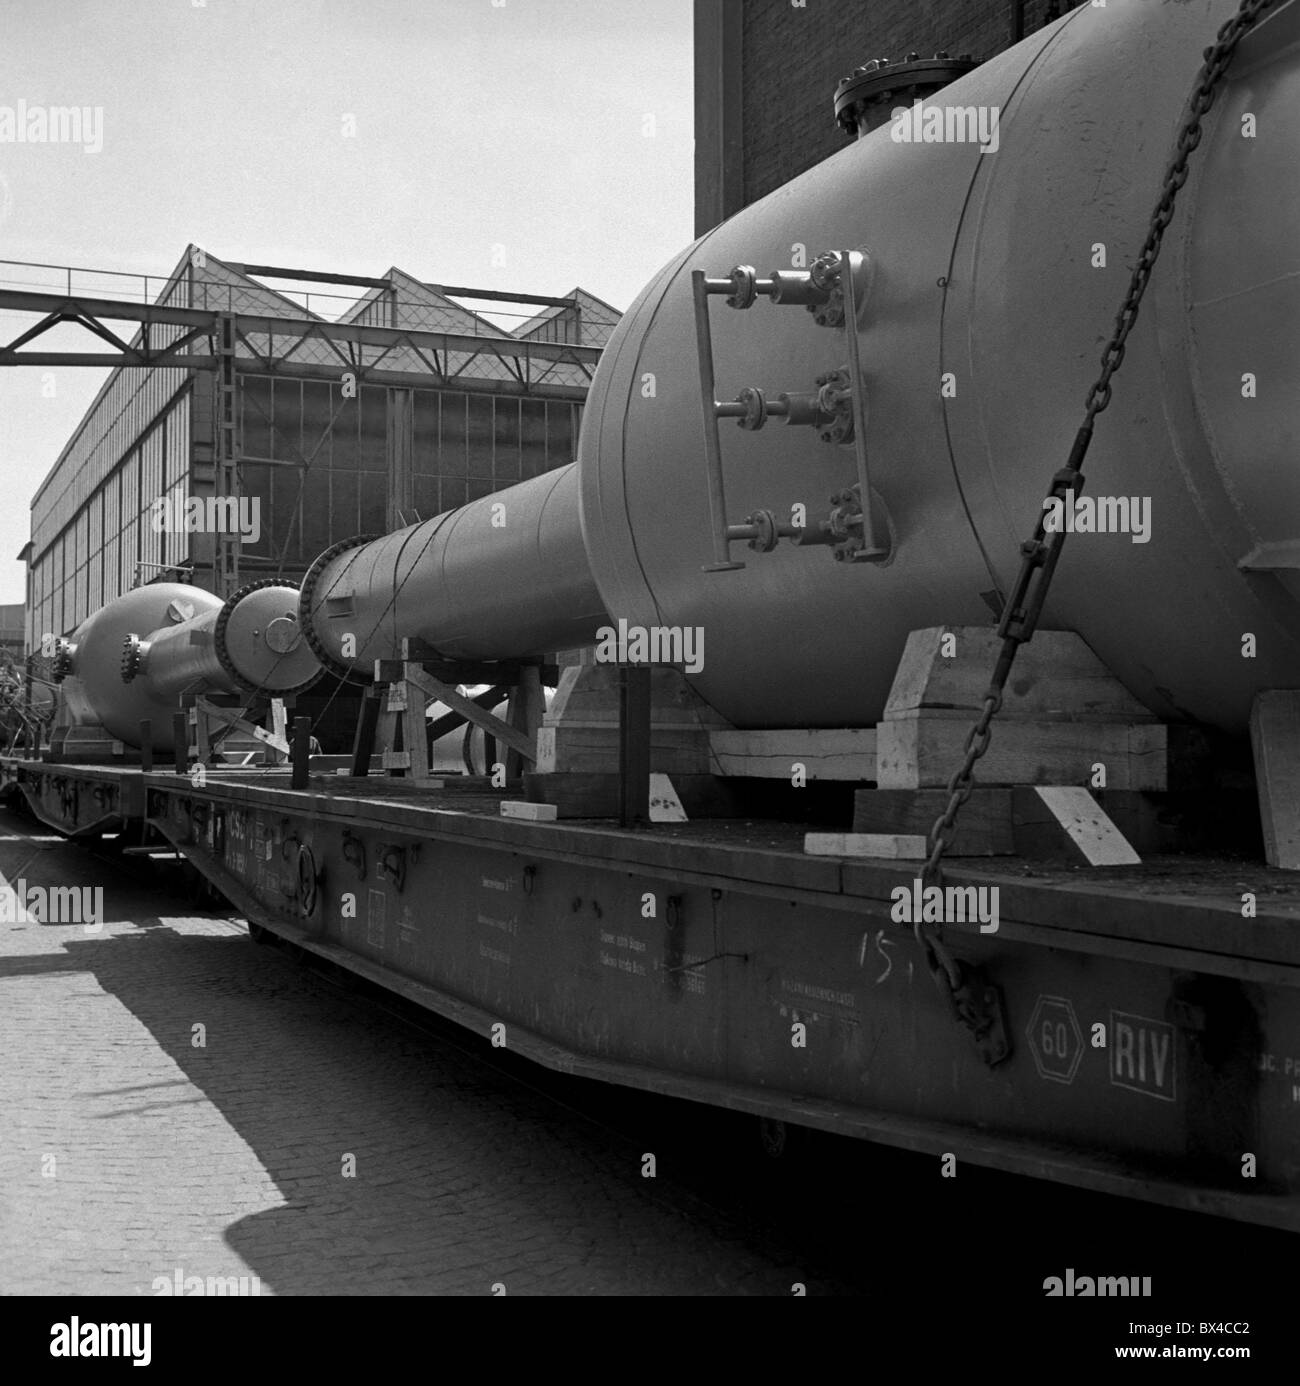 Gigantesco contenitore chimica per essere utilizzata per la conservazione di sostanze chimiche. Brno, Cecoslovacchia 1958. (CTK Foto Emil Bican) Foto Stock